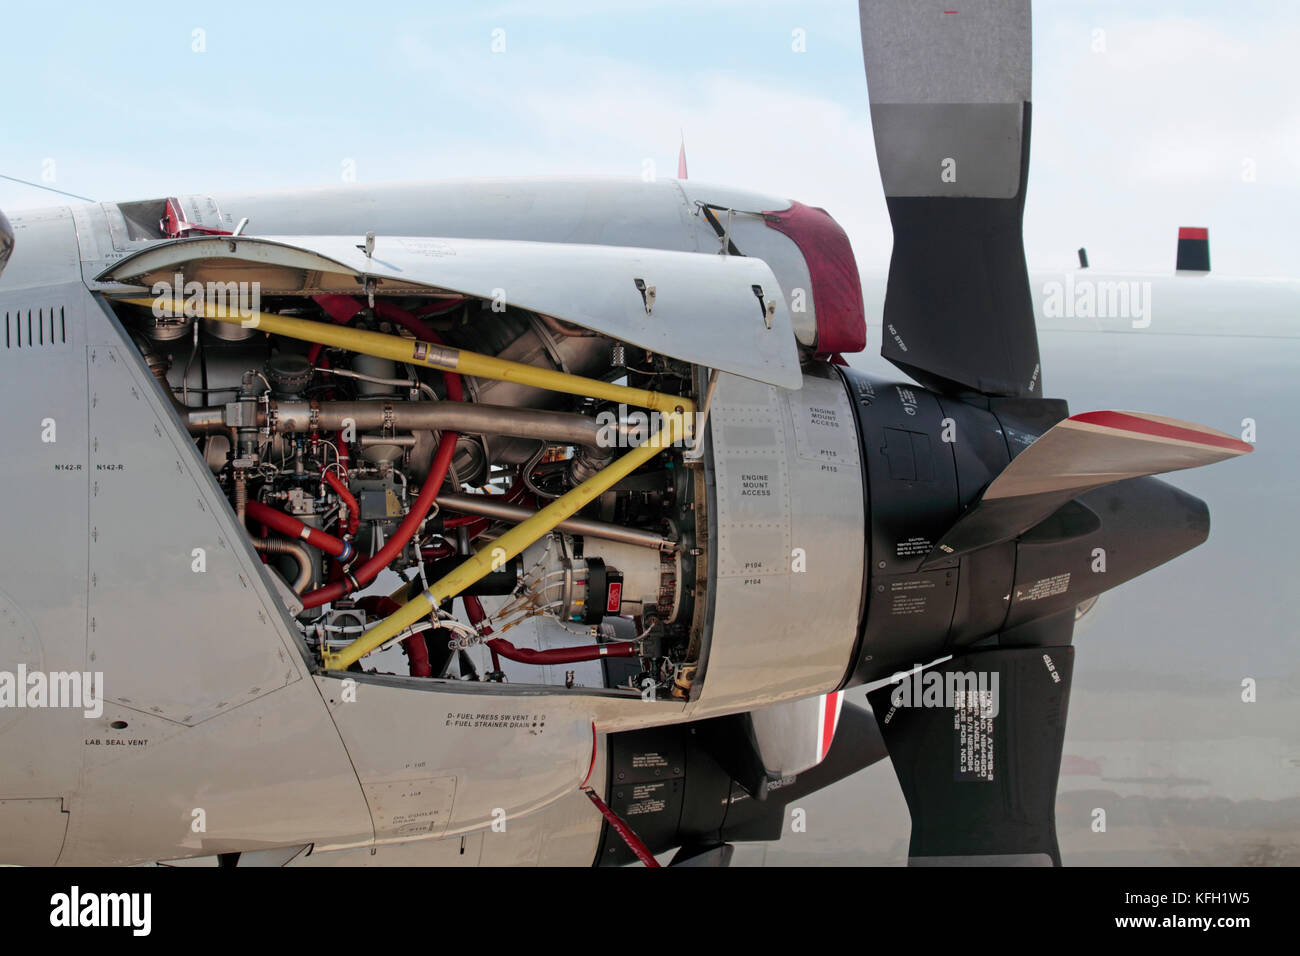 Nahaufnahme einer Allison T 56 turboprop Engine auf einem deutschen Marine P-3C Orion Seeüberwachungsflugzeuge mit offenen Inspektionsabdeckung Stockfoto